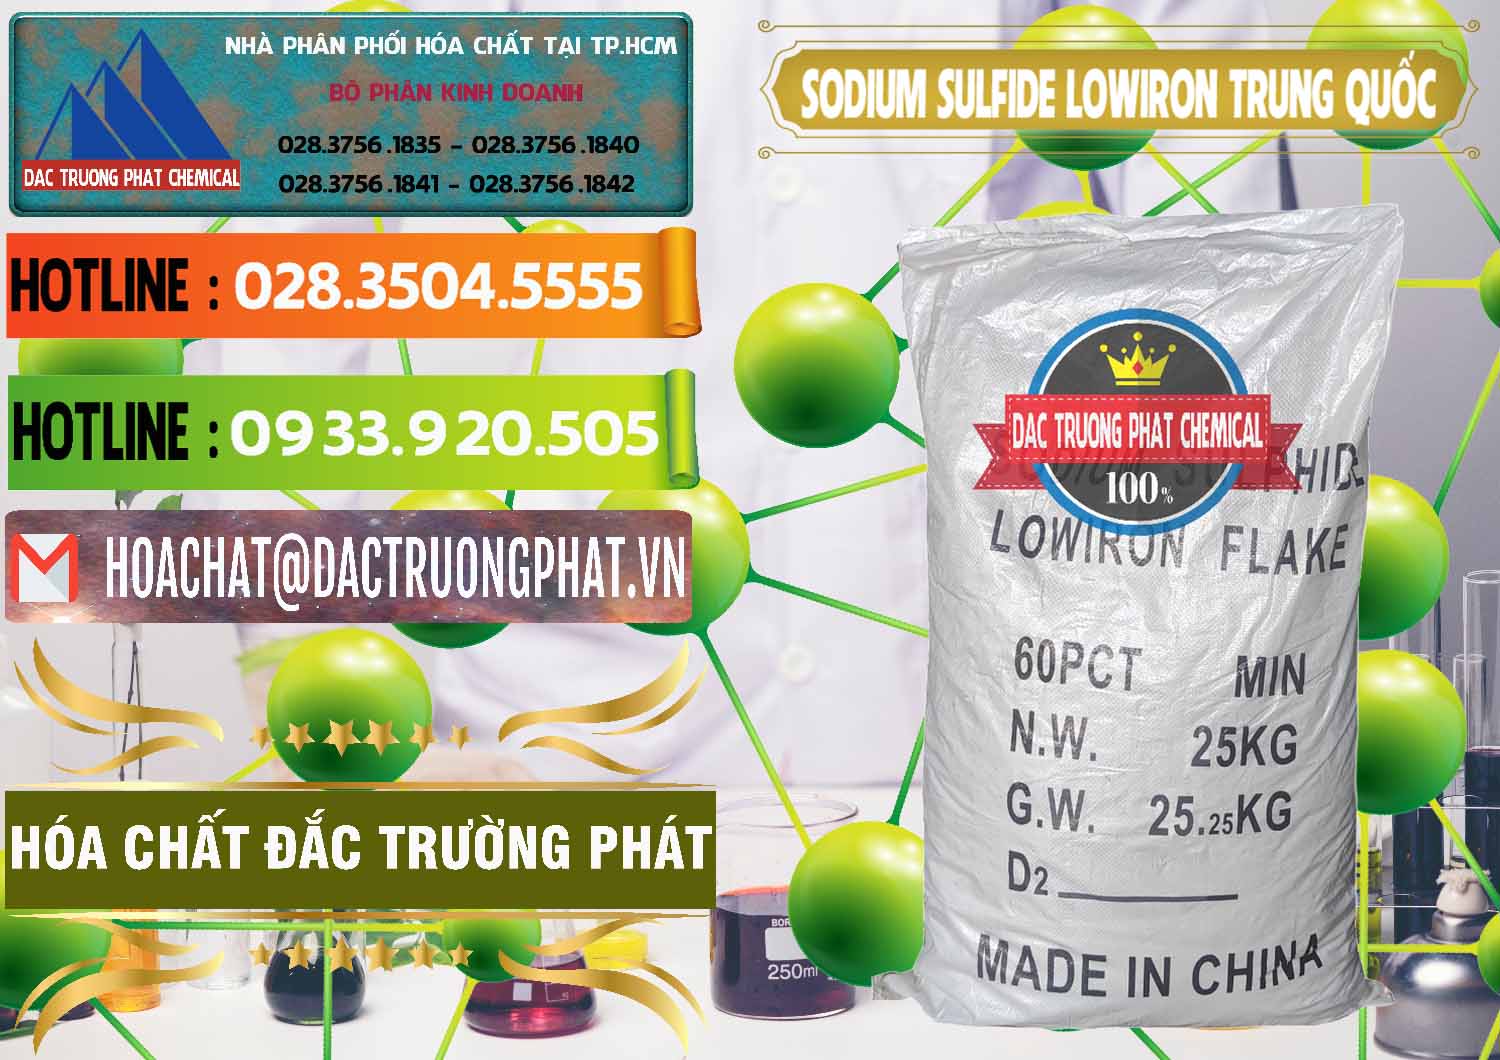 Chuyên cung ứng ( bán ) Sodium Sulfide NA2S – Đá Thối Lowiron Trung Quốc China - 0227 - Cty chuyên bán _ phân phối hóa chất tại TP.HCM - cungcaphoachat.com.vn